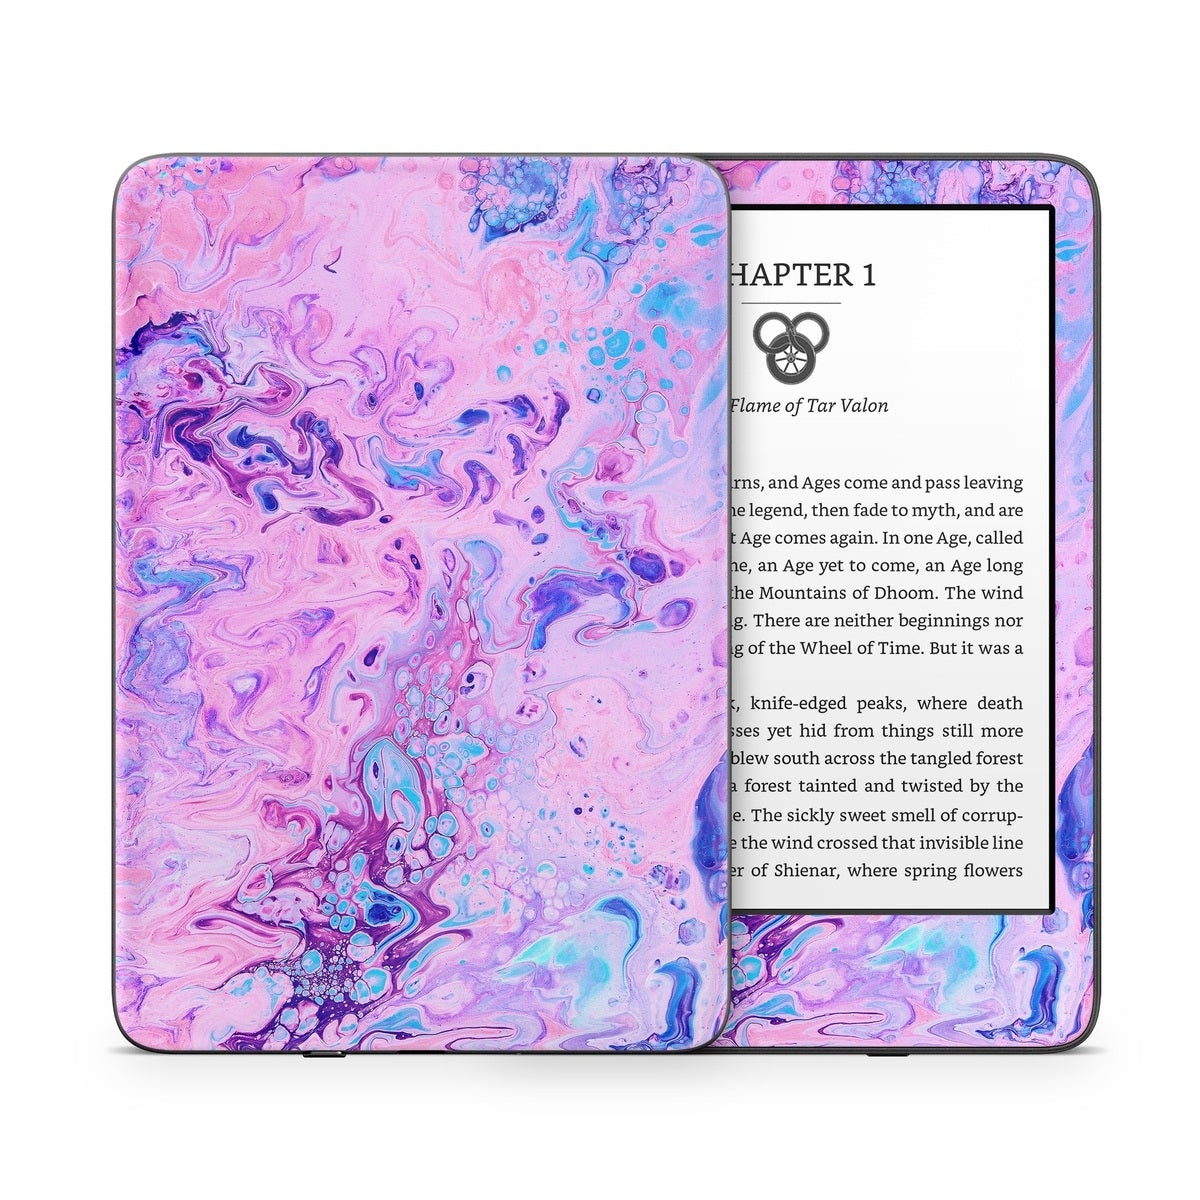 Bubble Bath - Amazon Kindle Skin